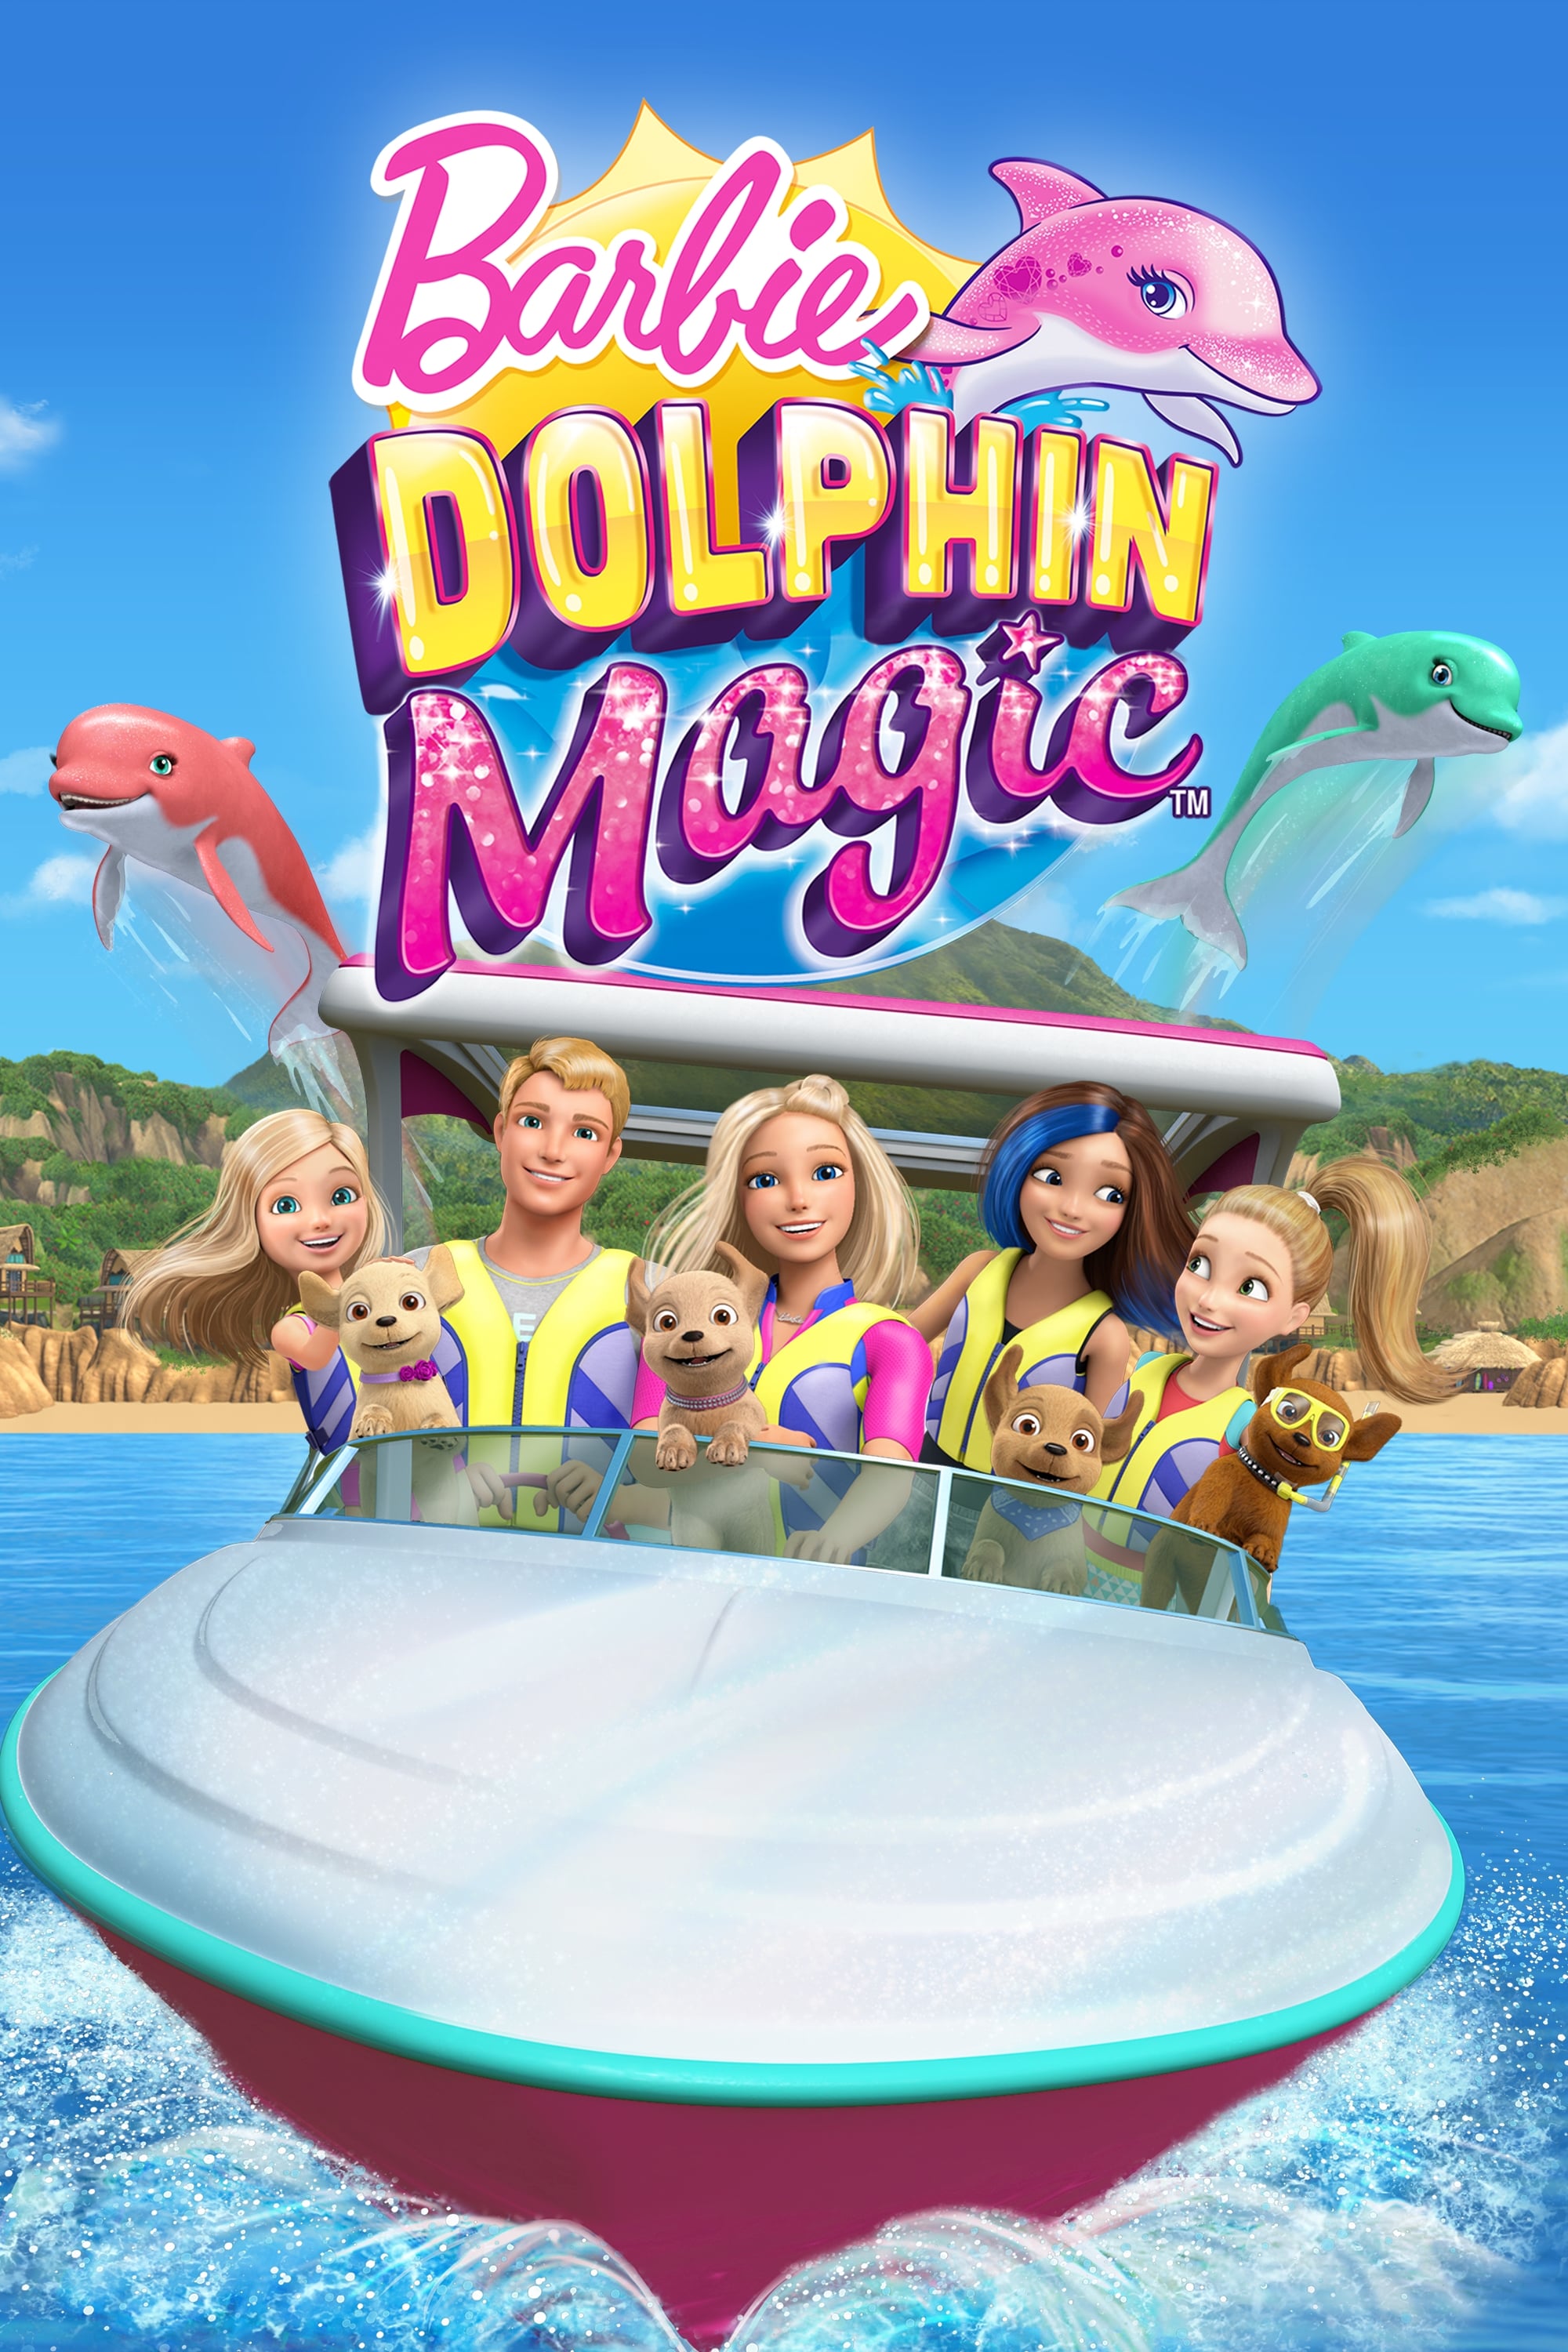 Barbie y Los Delfines Mágicos